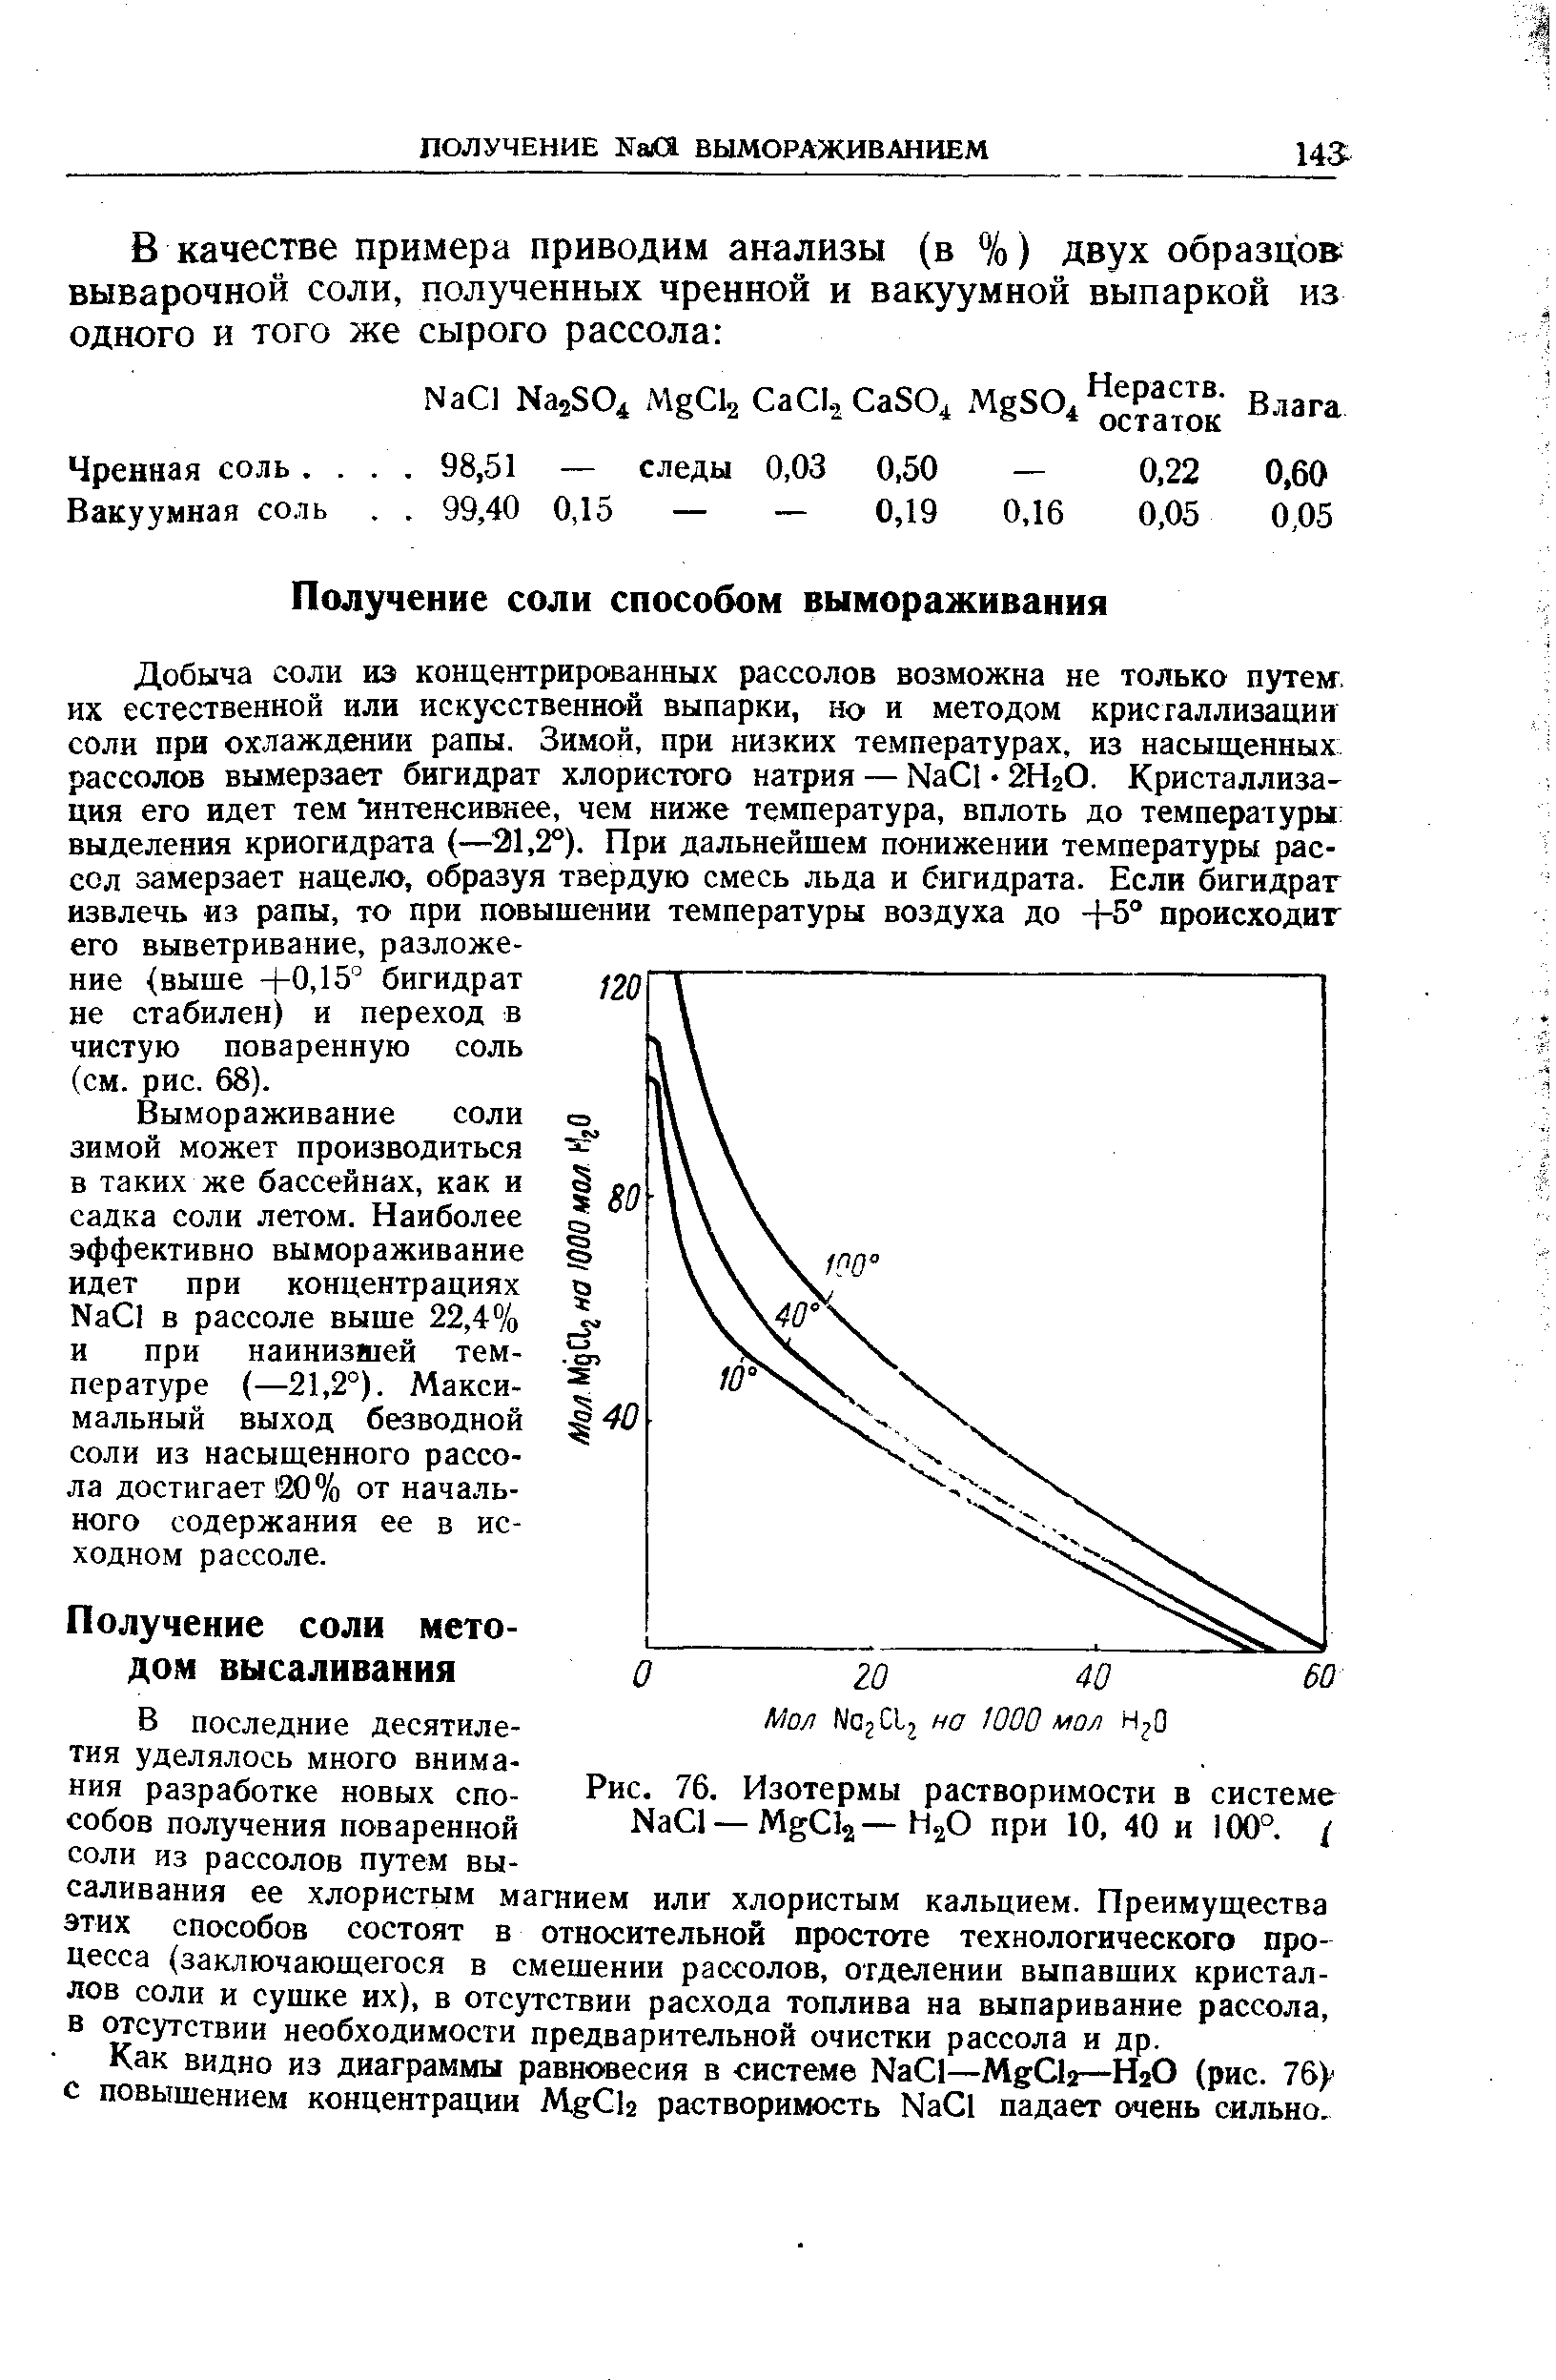 Как видно из диаграммы равновесия в системе Na l—Mg la—Н2О (рис. 7б с повышением концентрации Mg b растворимость Na l падает очень сильно.